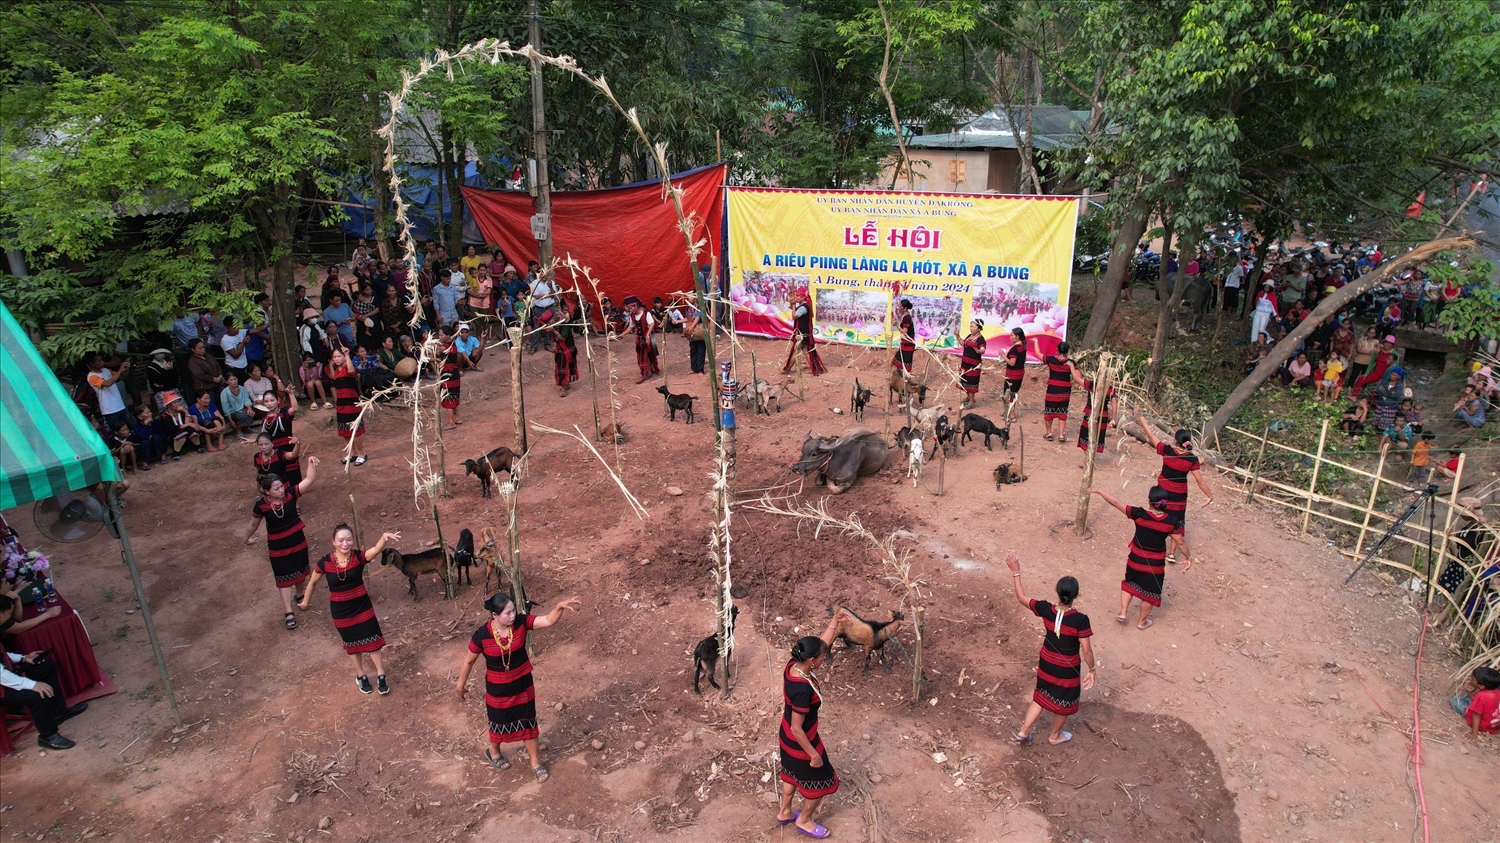 Sau gần 10 năm lễ A Riêu Piing của người Pa Cô ở A Bung (Đakrông, Quảng Trị) lại được tổ chức, mang lại niềm vui phấn khởi trong Nhân dân